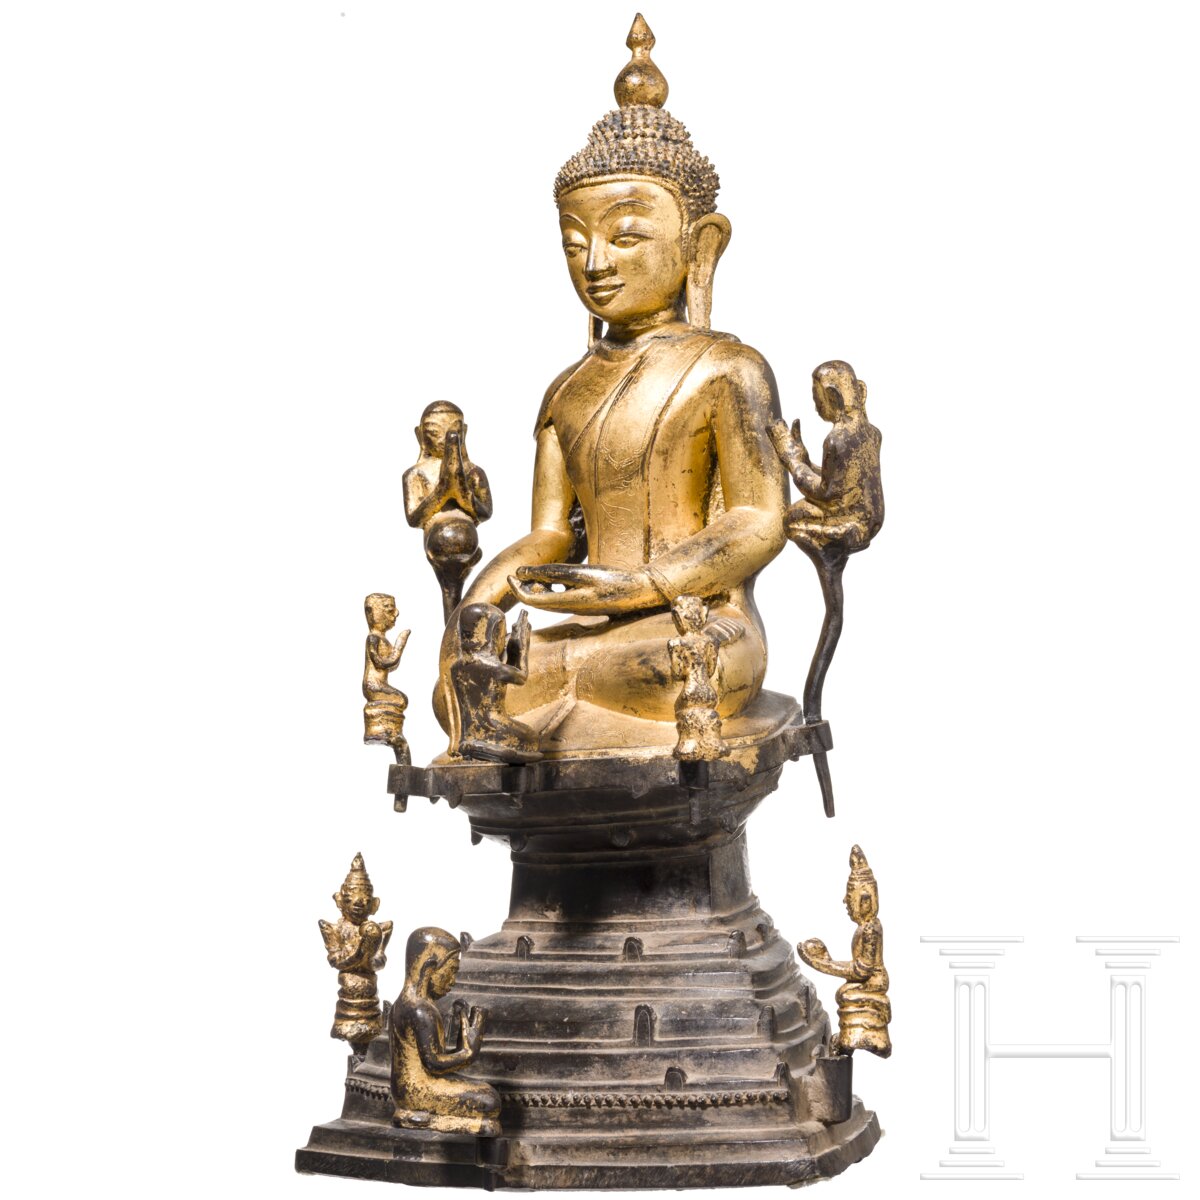 Lackierte und vergoldete Buddhafigur, Burma, 17./18. Jhdt. - Image 2 of 7